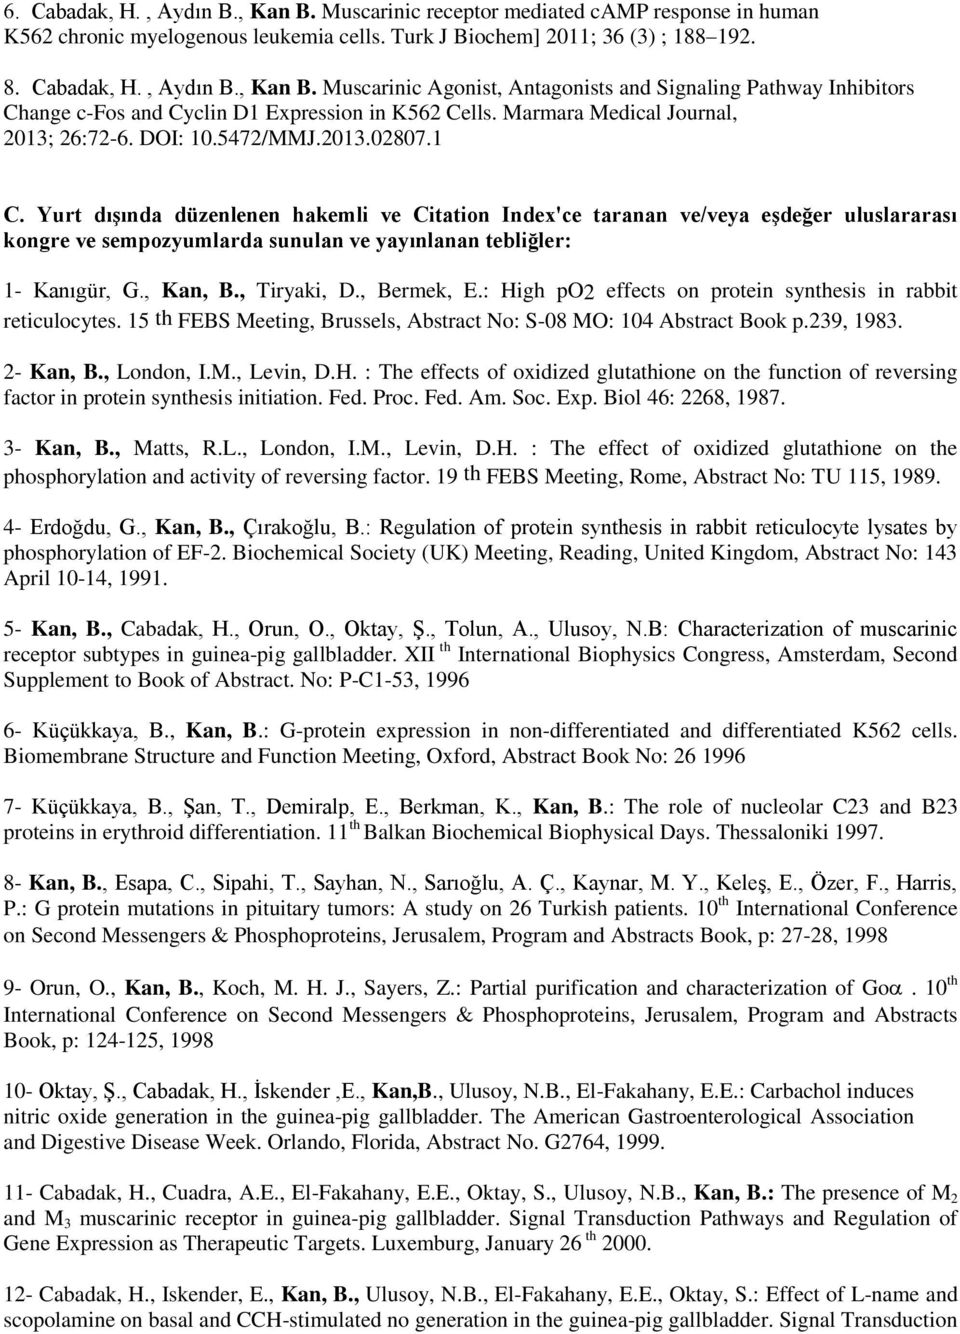 Yurt dışında düzenlenen hakemli ve Citation Index'ce taranan ve/veya eşdeğer uluslararası kongre ve sempozyumlarda sunulan ve yayınlanan tebliğler: 1- Kanıgür, G., Kan, B., Tiryaki, D., Bermek, E.